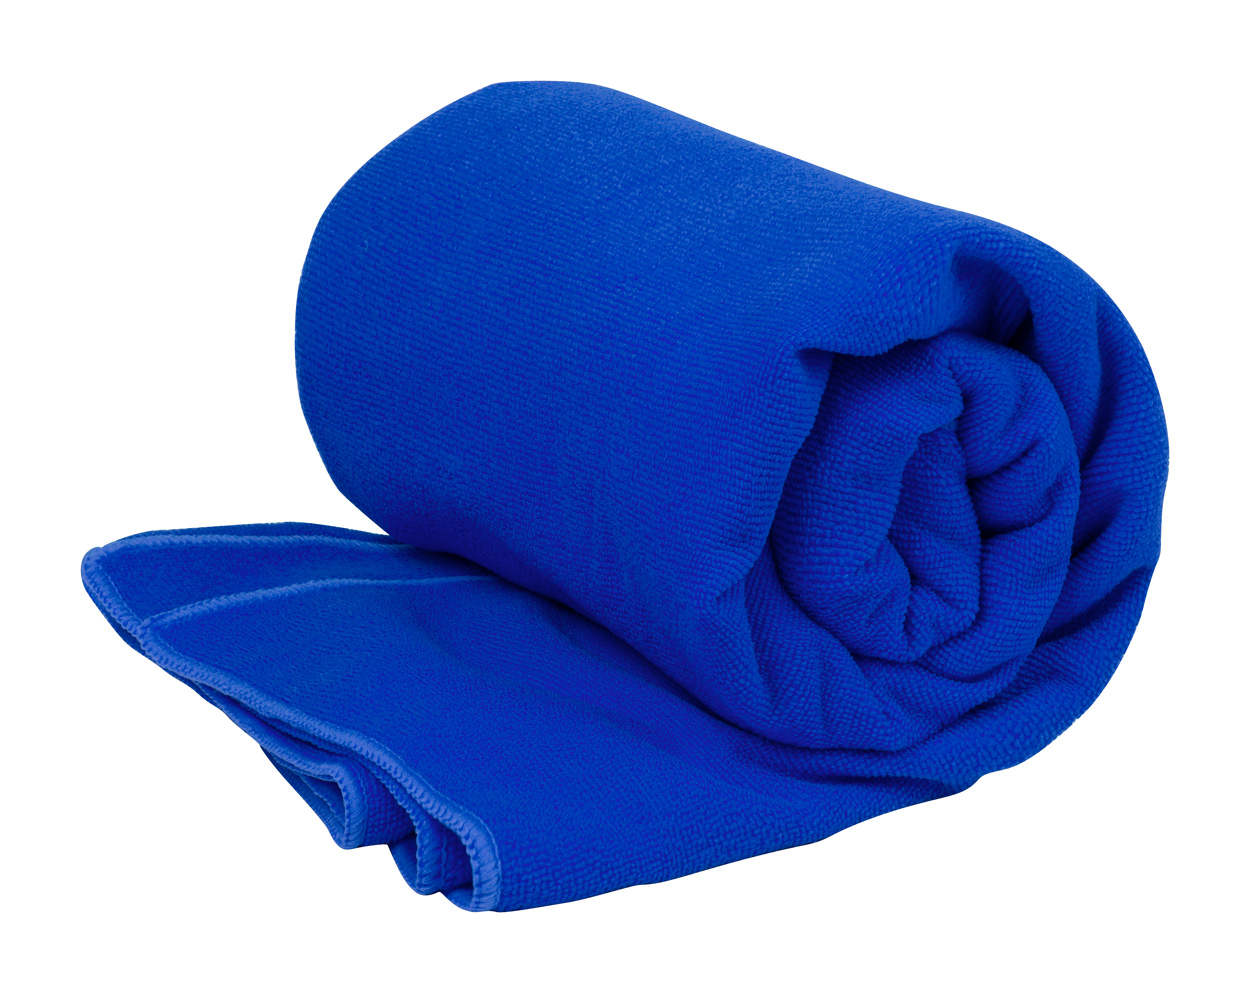 Risel RPET towel - blue